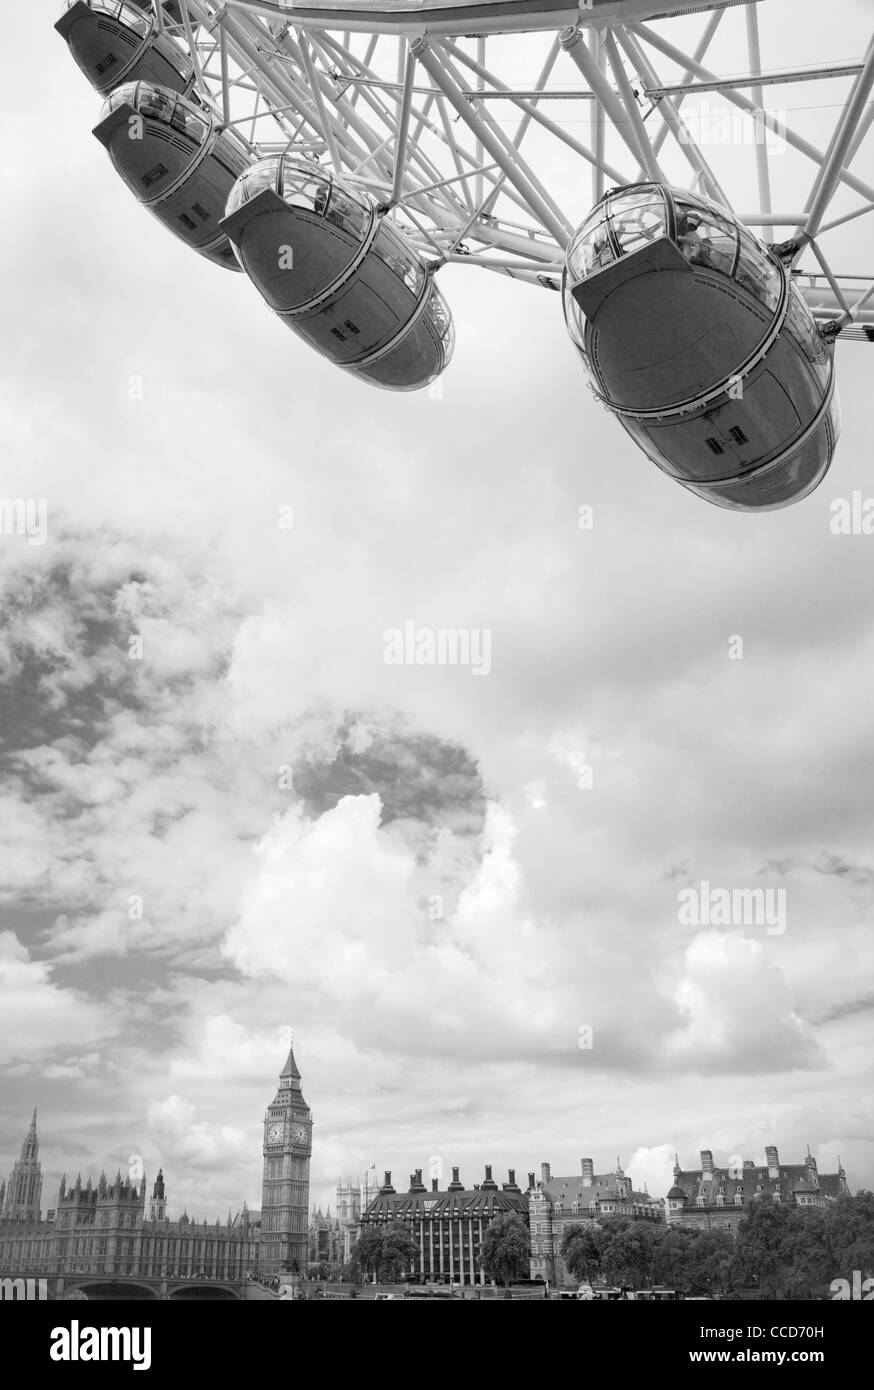 Un détail de la grande roue London Eye et la rive nord de la Tamise dans l'arrière-plan, en Angleterre. Banque D'Images